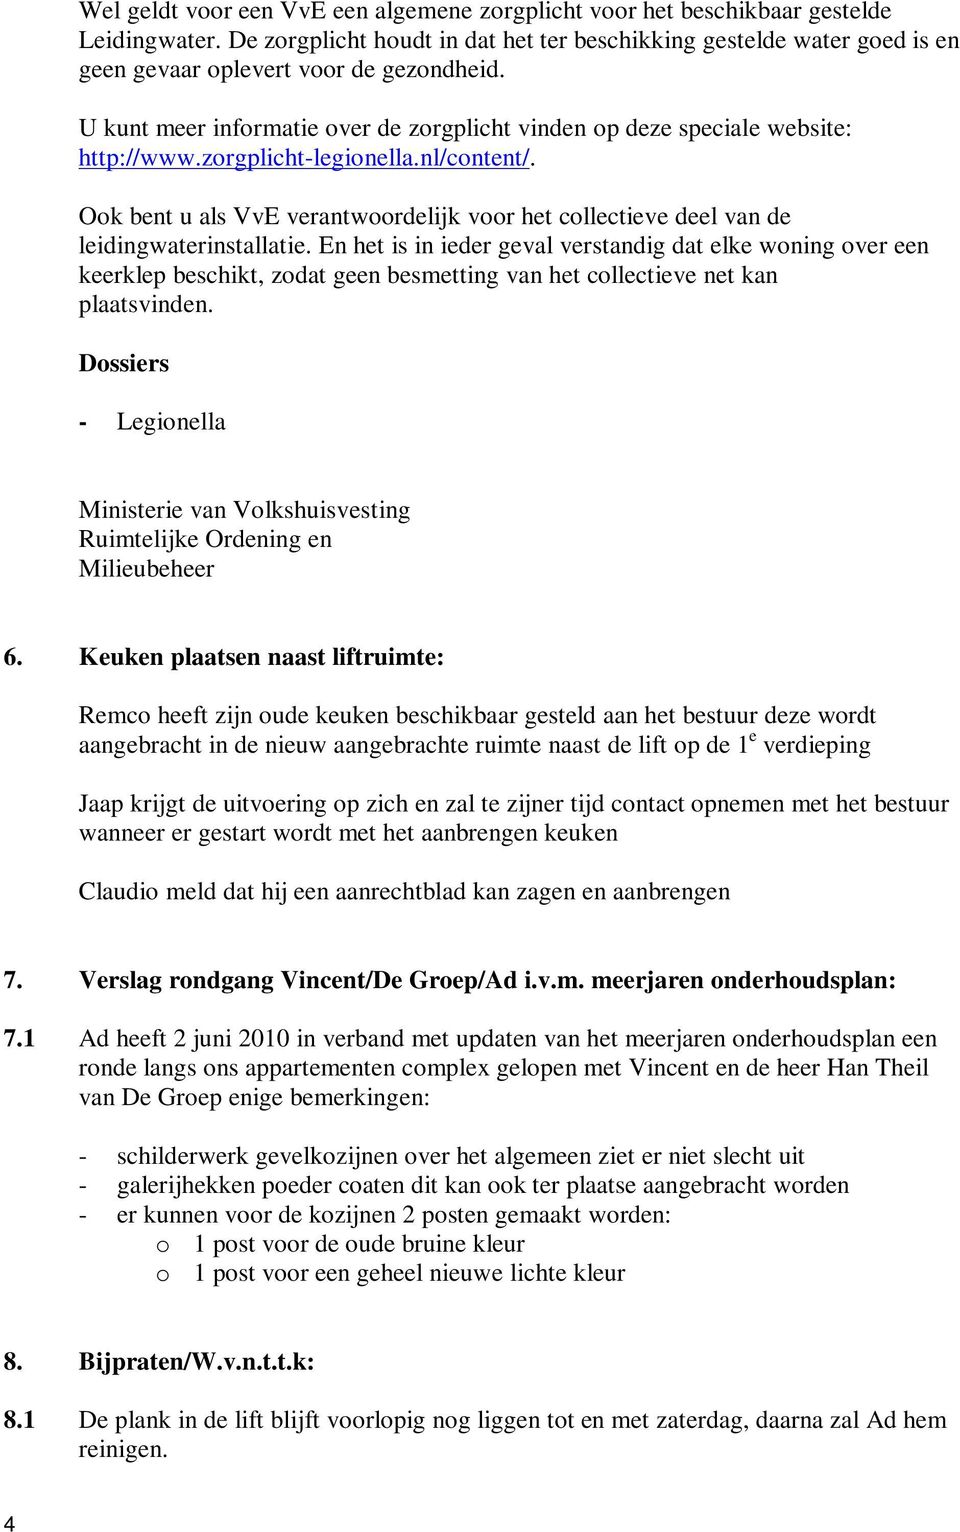 zorgplicht-legionella.nl/content/. Ook bent u als VvE verantwoordelijk voor het collectieve deel van de leidingwaterinstallatie.